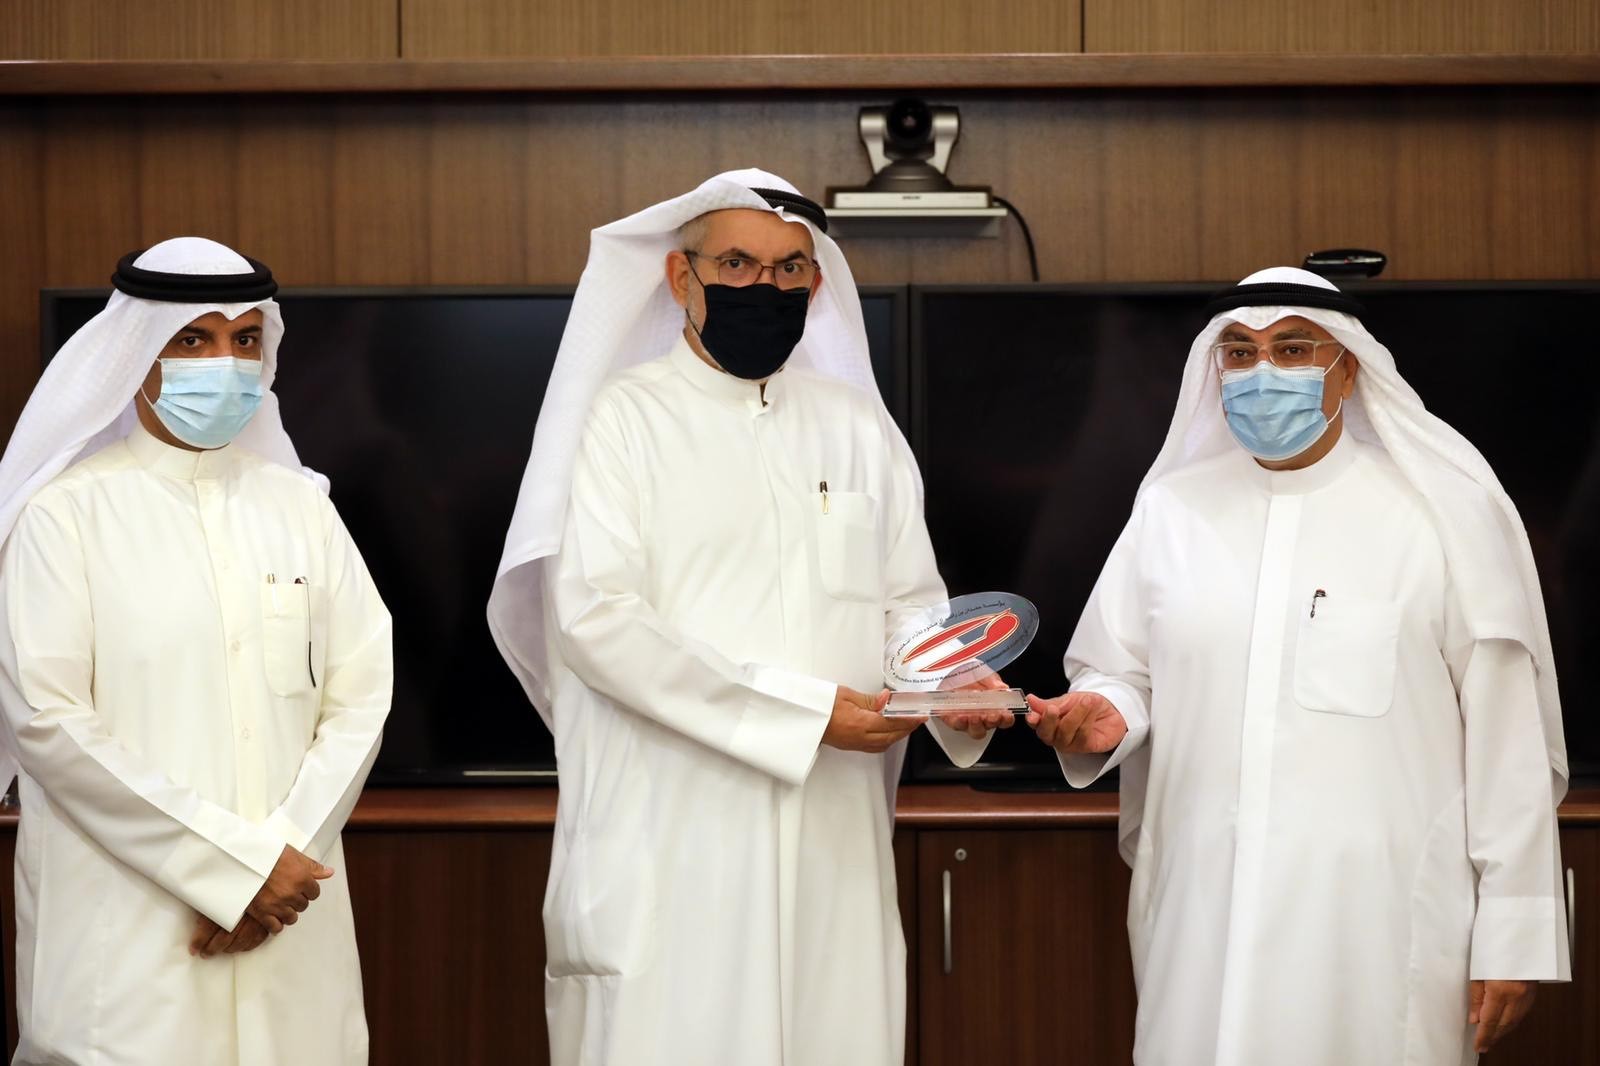 مسؤول تربوي: الكويت سباقة في حصد الجوائز التعليمية والتربوية ورفع اسمها في المحافل الدولية